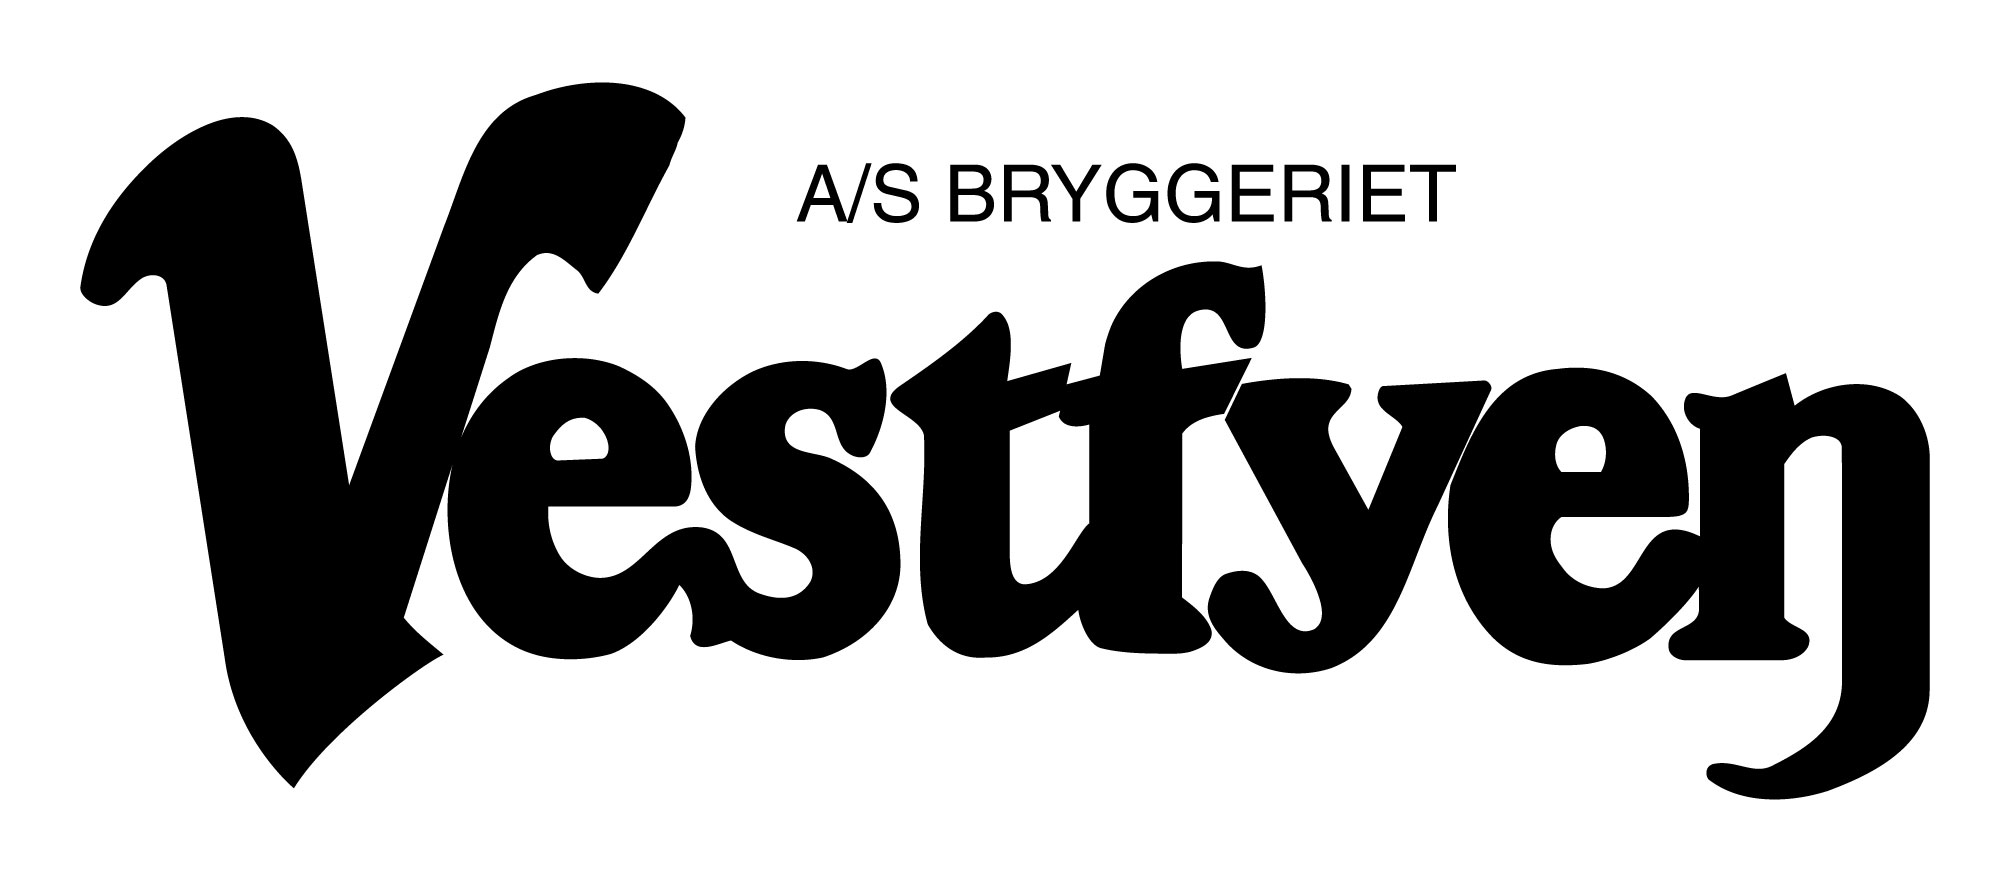 Bryggeriet Vestfyen Logo